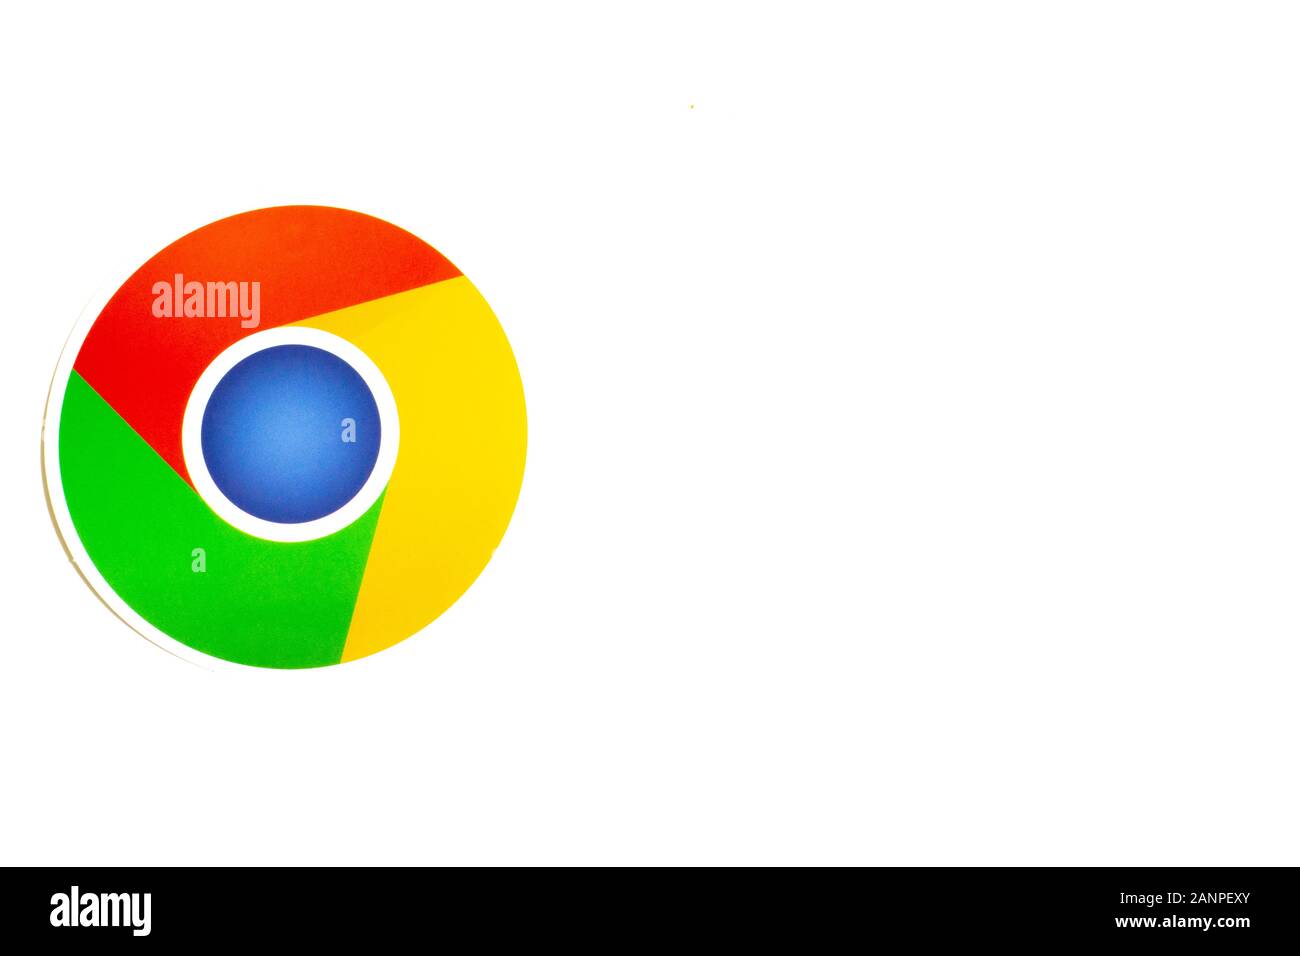 Los Angeles, Californie, États-Unis - 17 janvier 2020: Logo du navigateur Google Chrome sur fond blanc avec espace de copie. Icône des médias sociaux, illustrative Banque D'Images